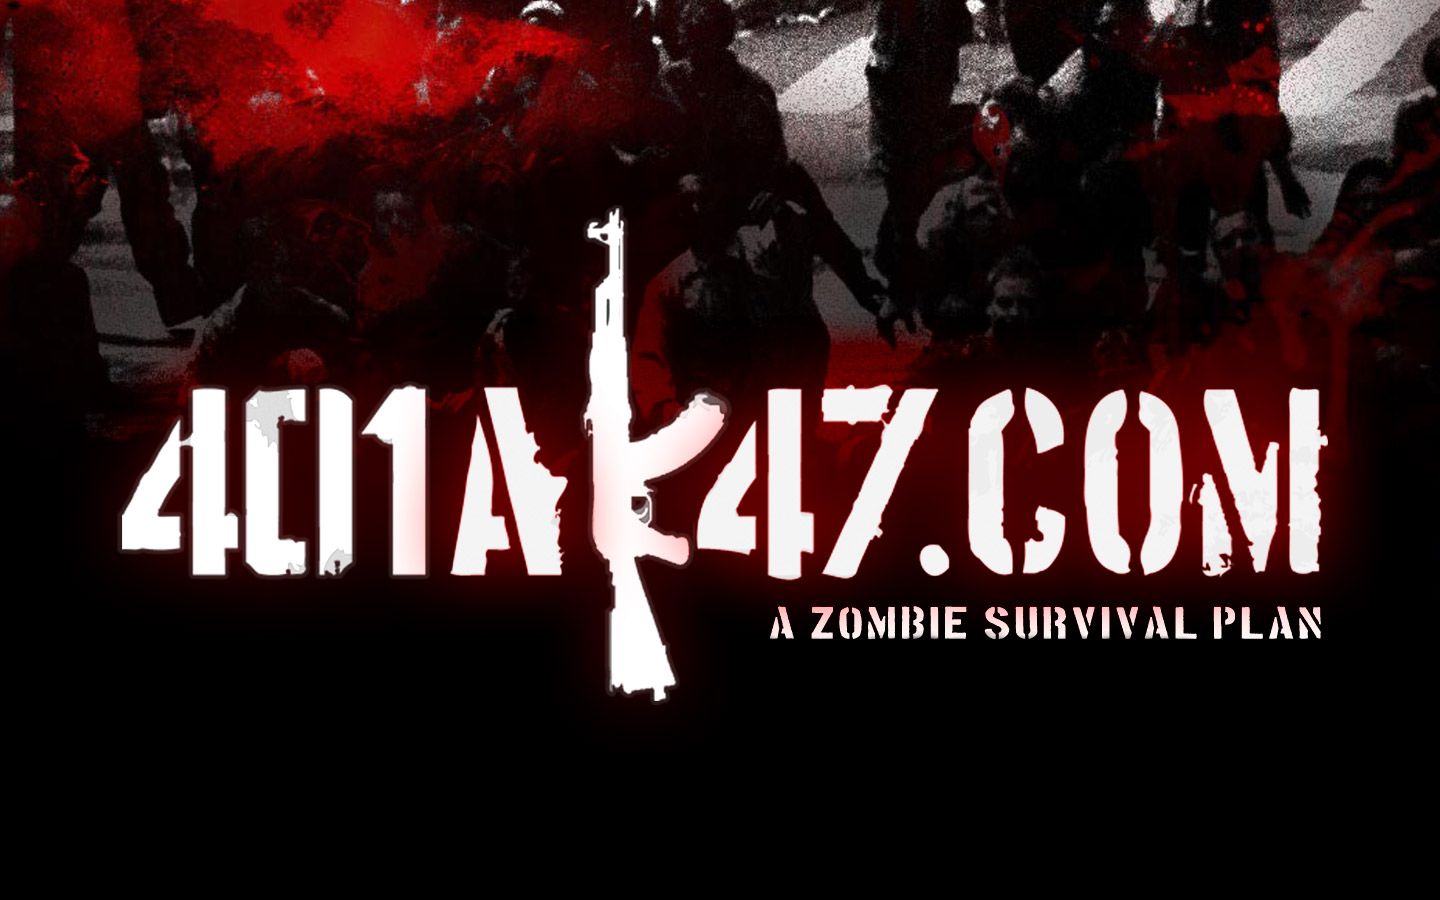 Zombie Desktop Wallpaper | 401AK47 | A Zombie Survival Plan